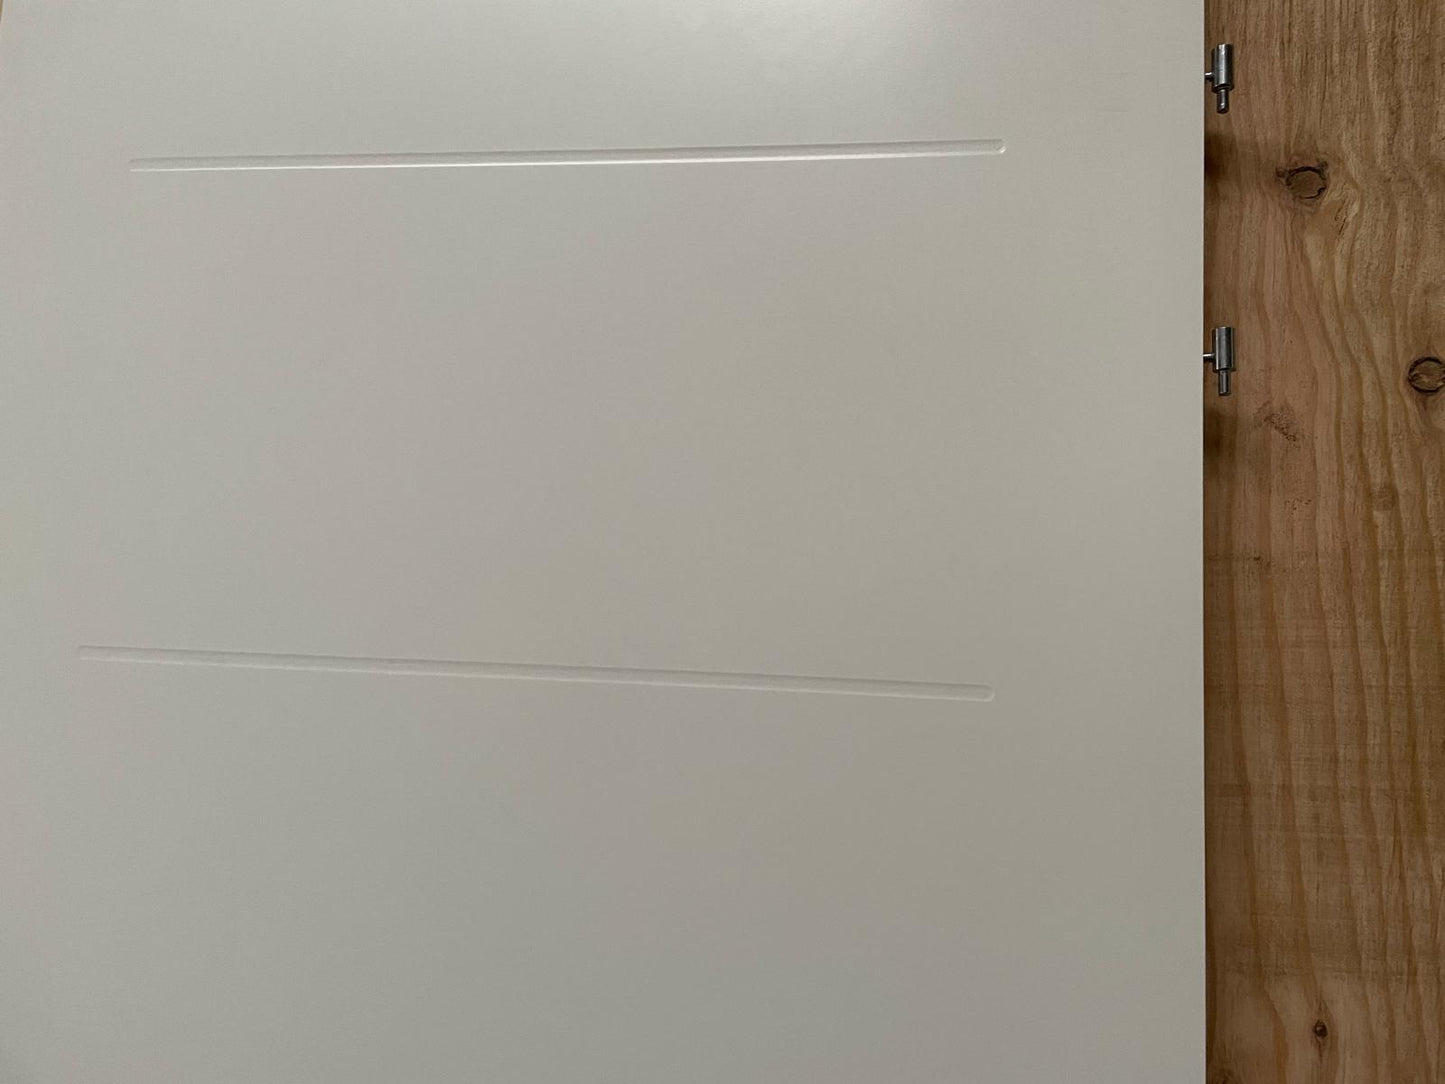 Sier opdekdeur (BxH) 79,5 x 230,5 cm - Partij(en)